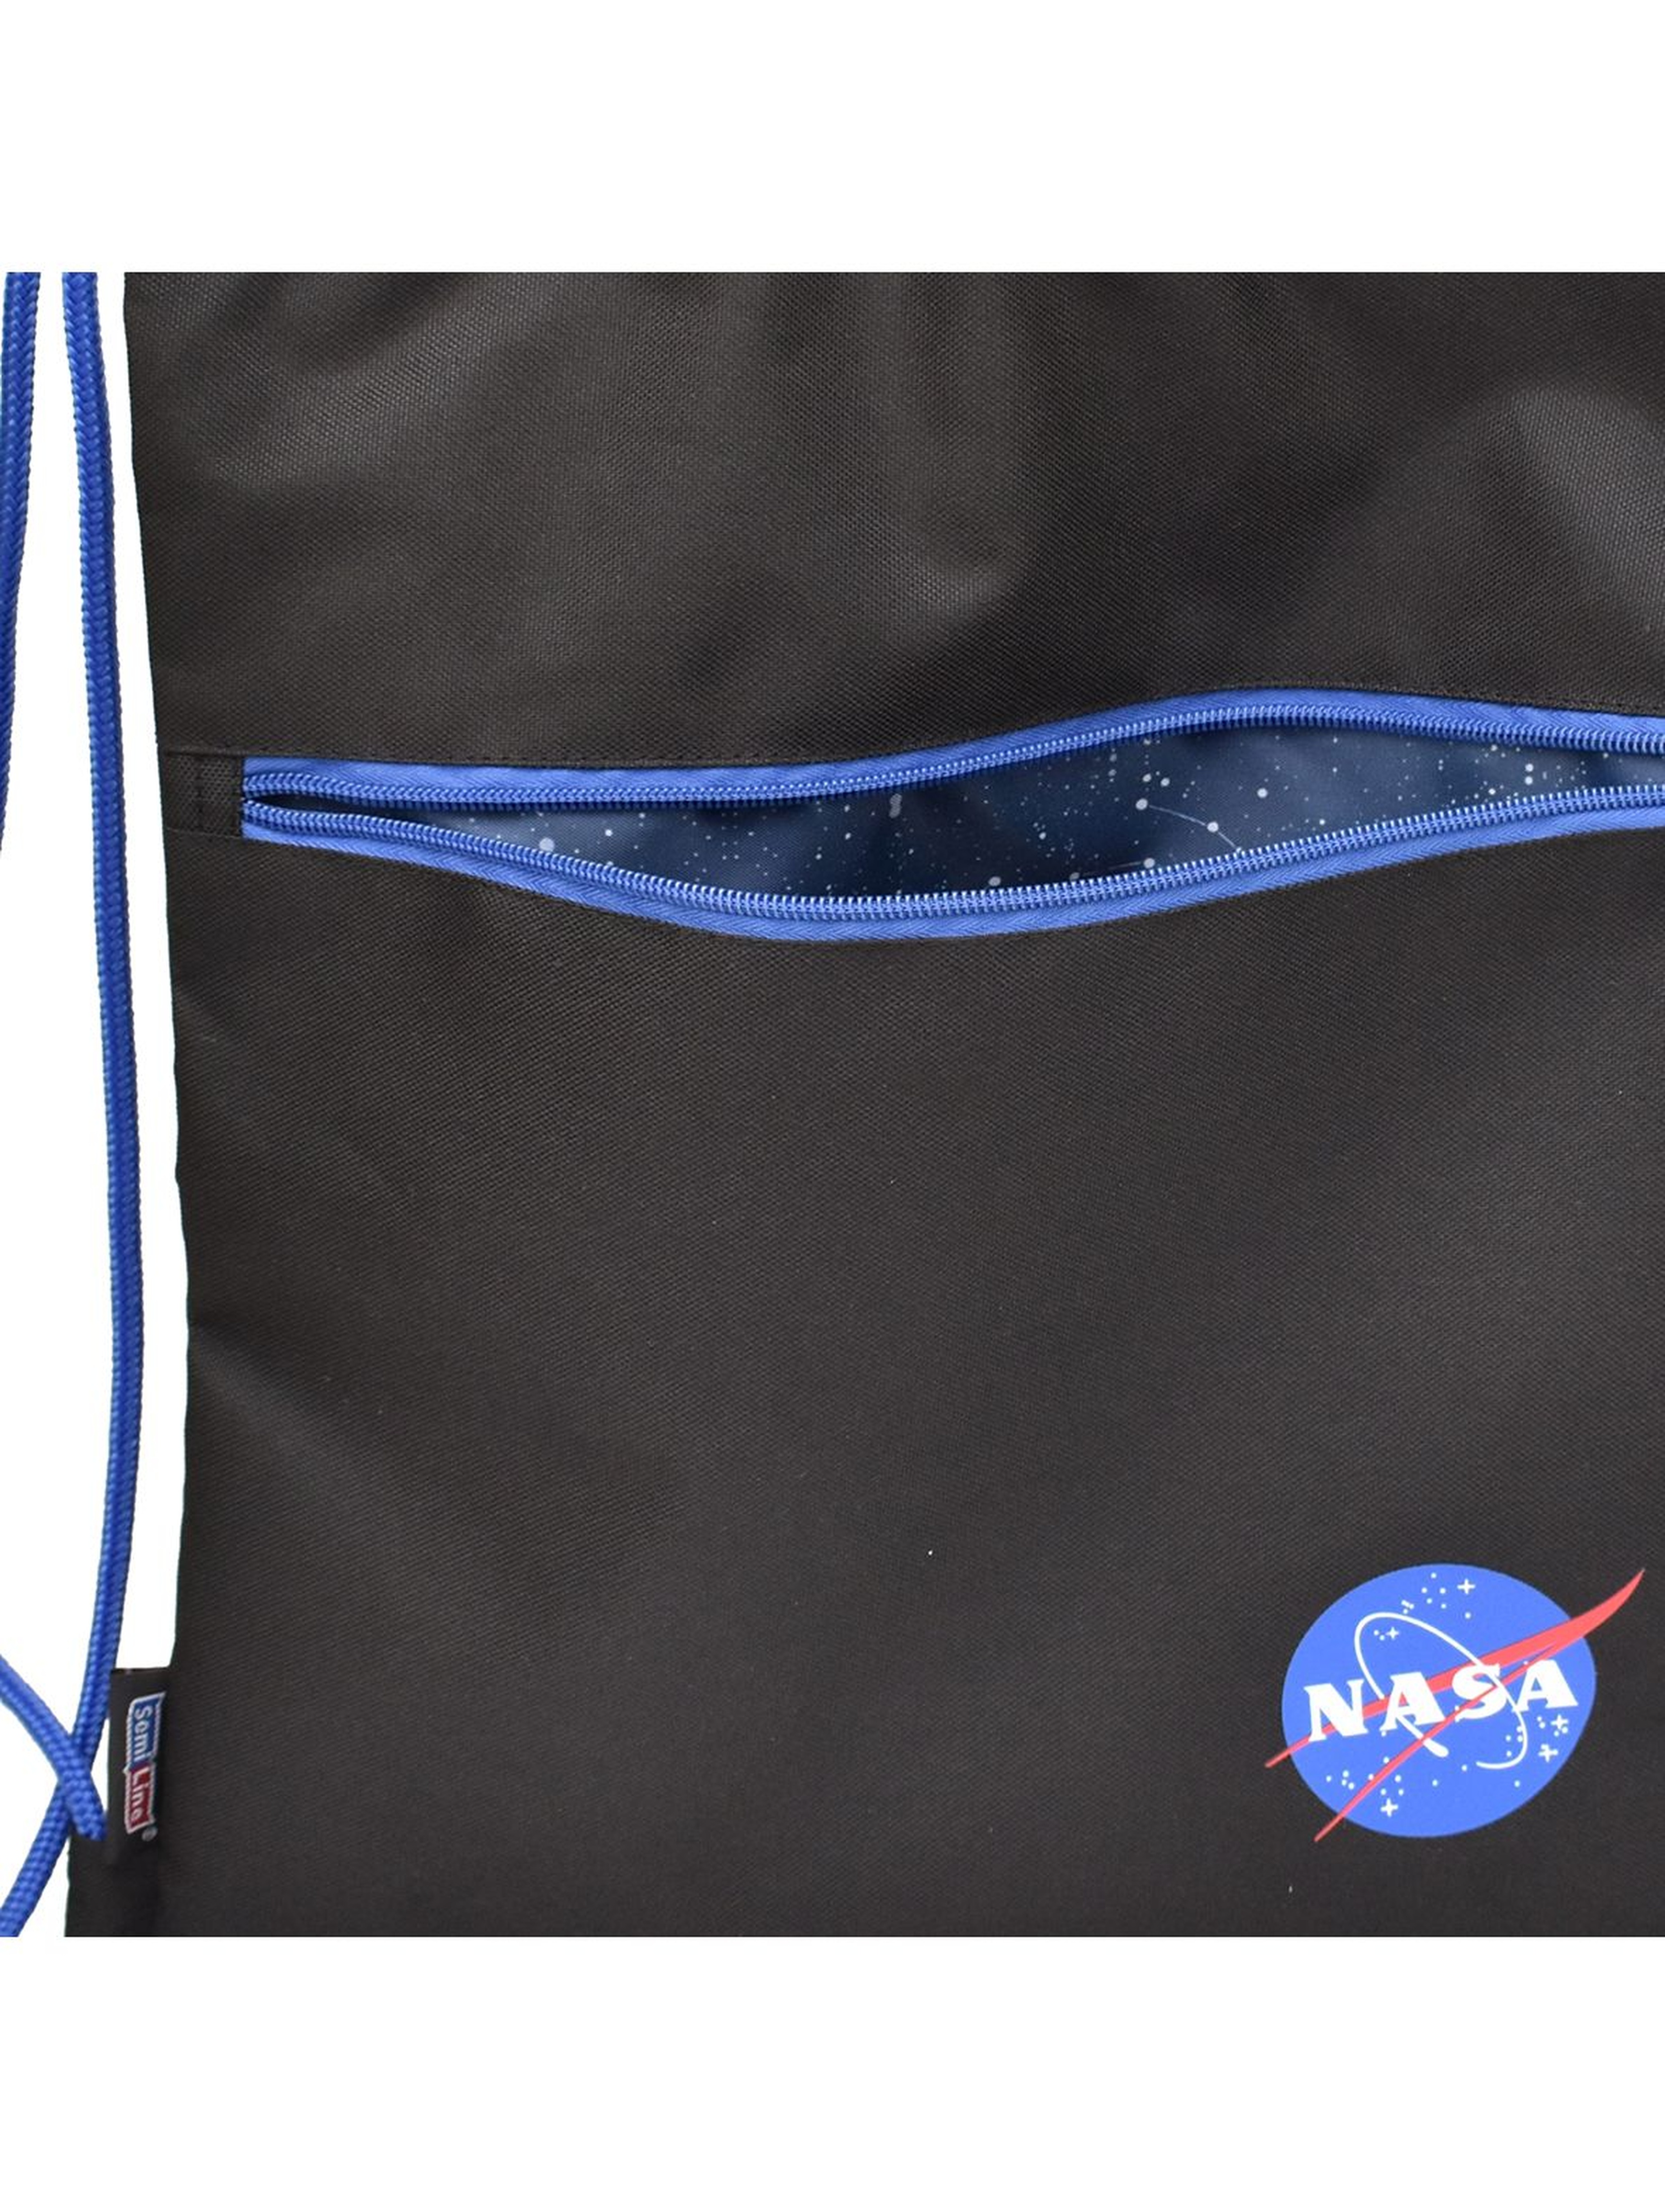 Czarno-niebieski worek NASA 44x33cm